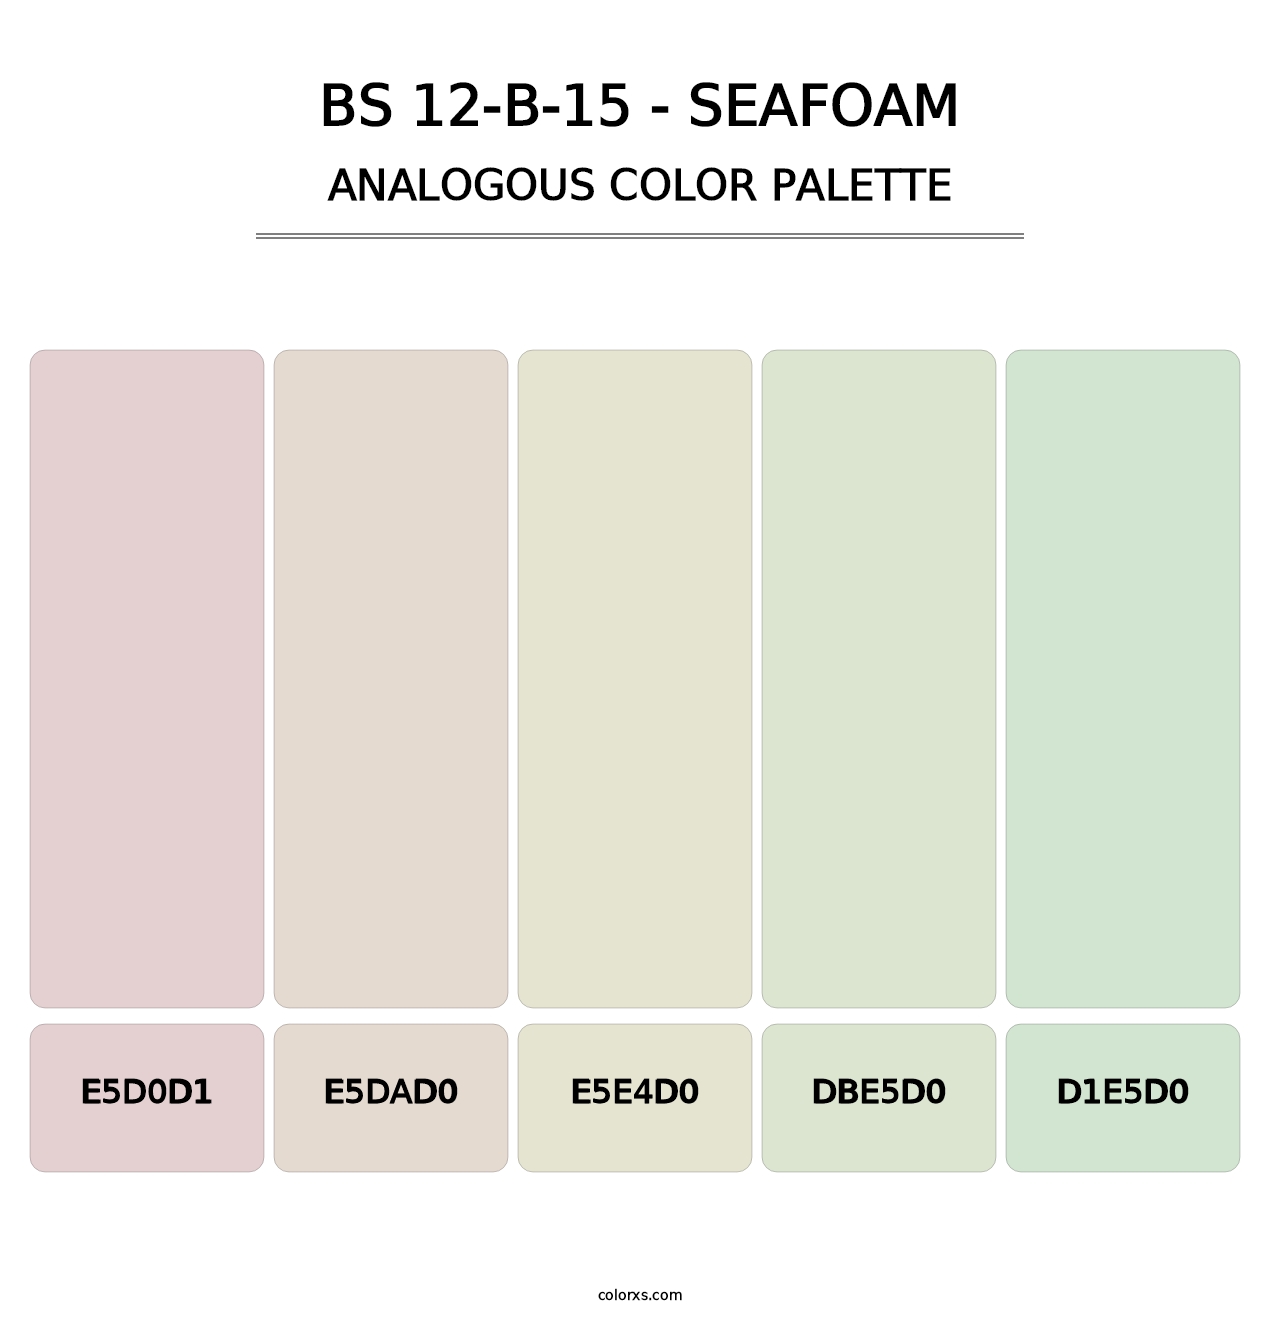 BS 12-B-15 - Seafoam - Analogous Color Palette